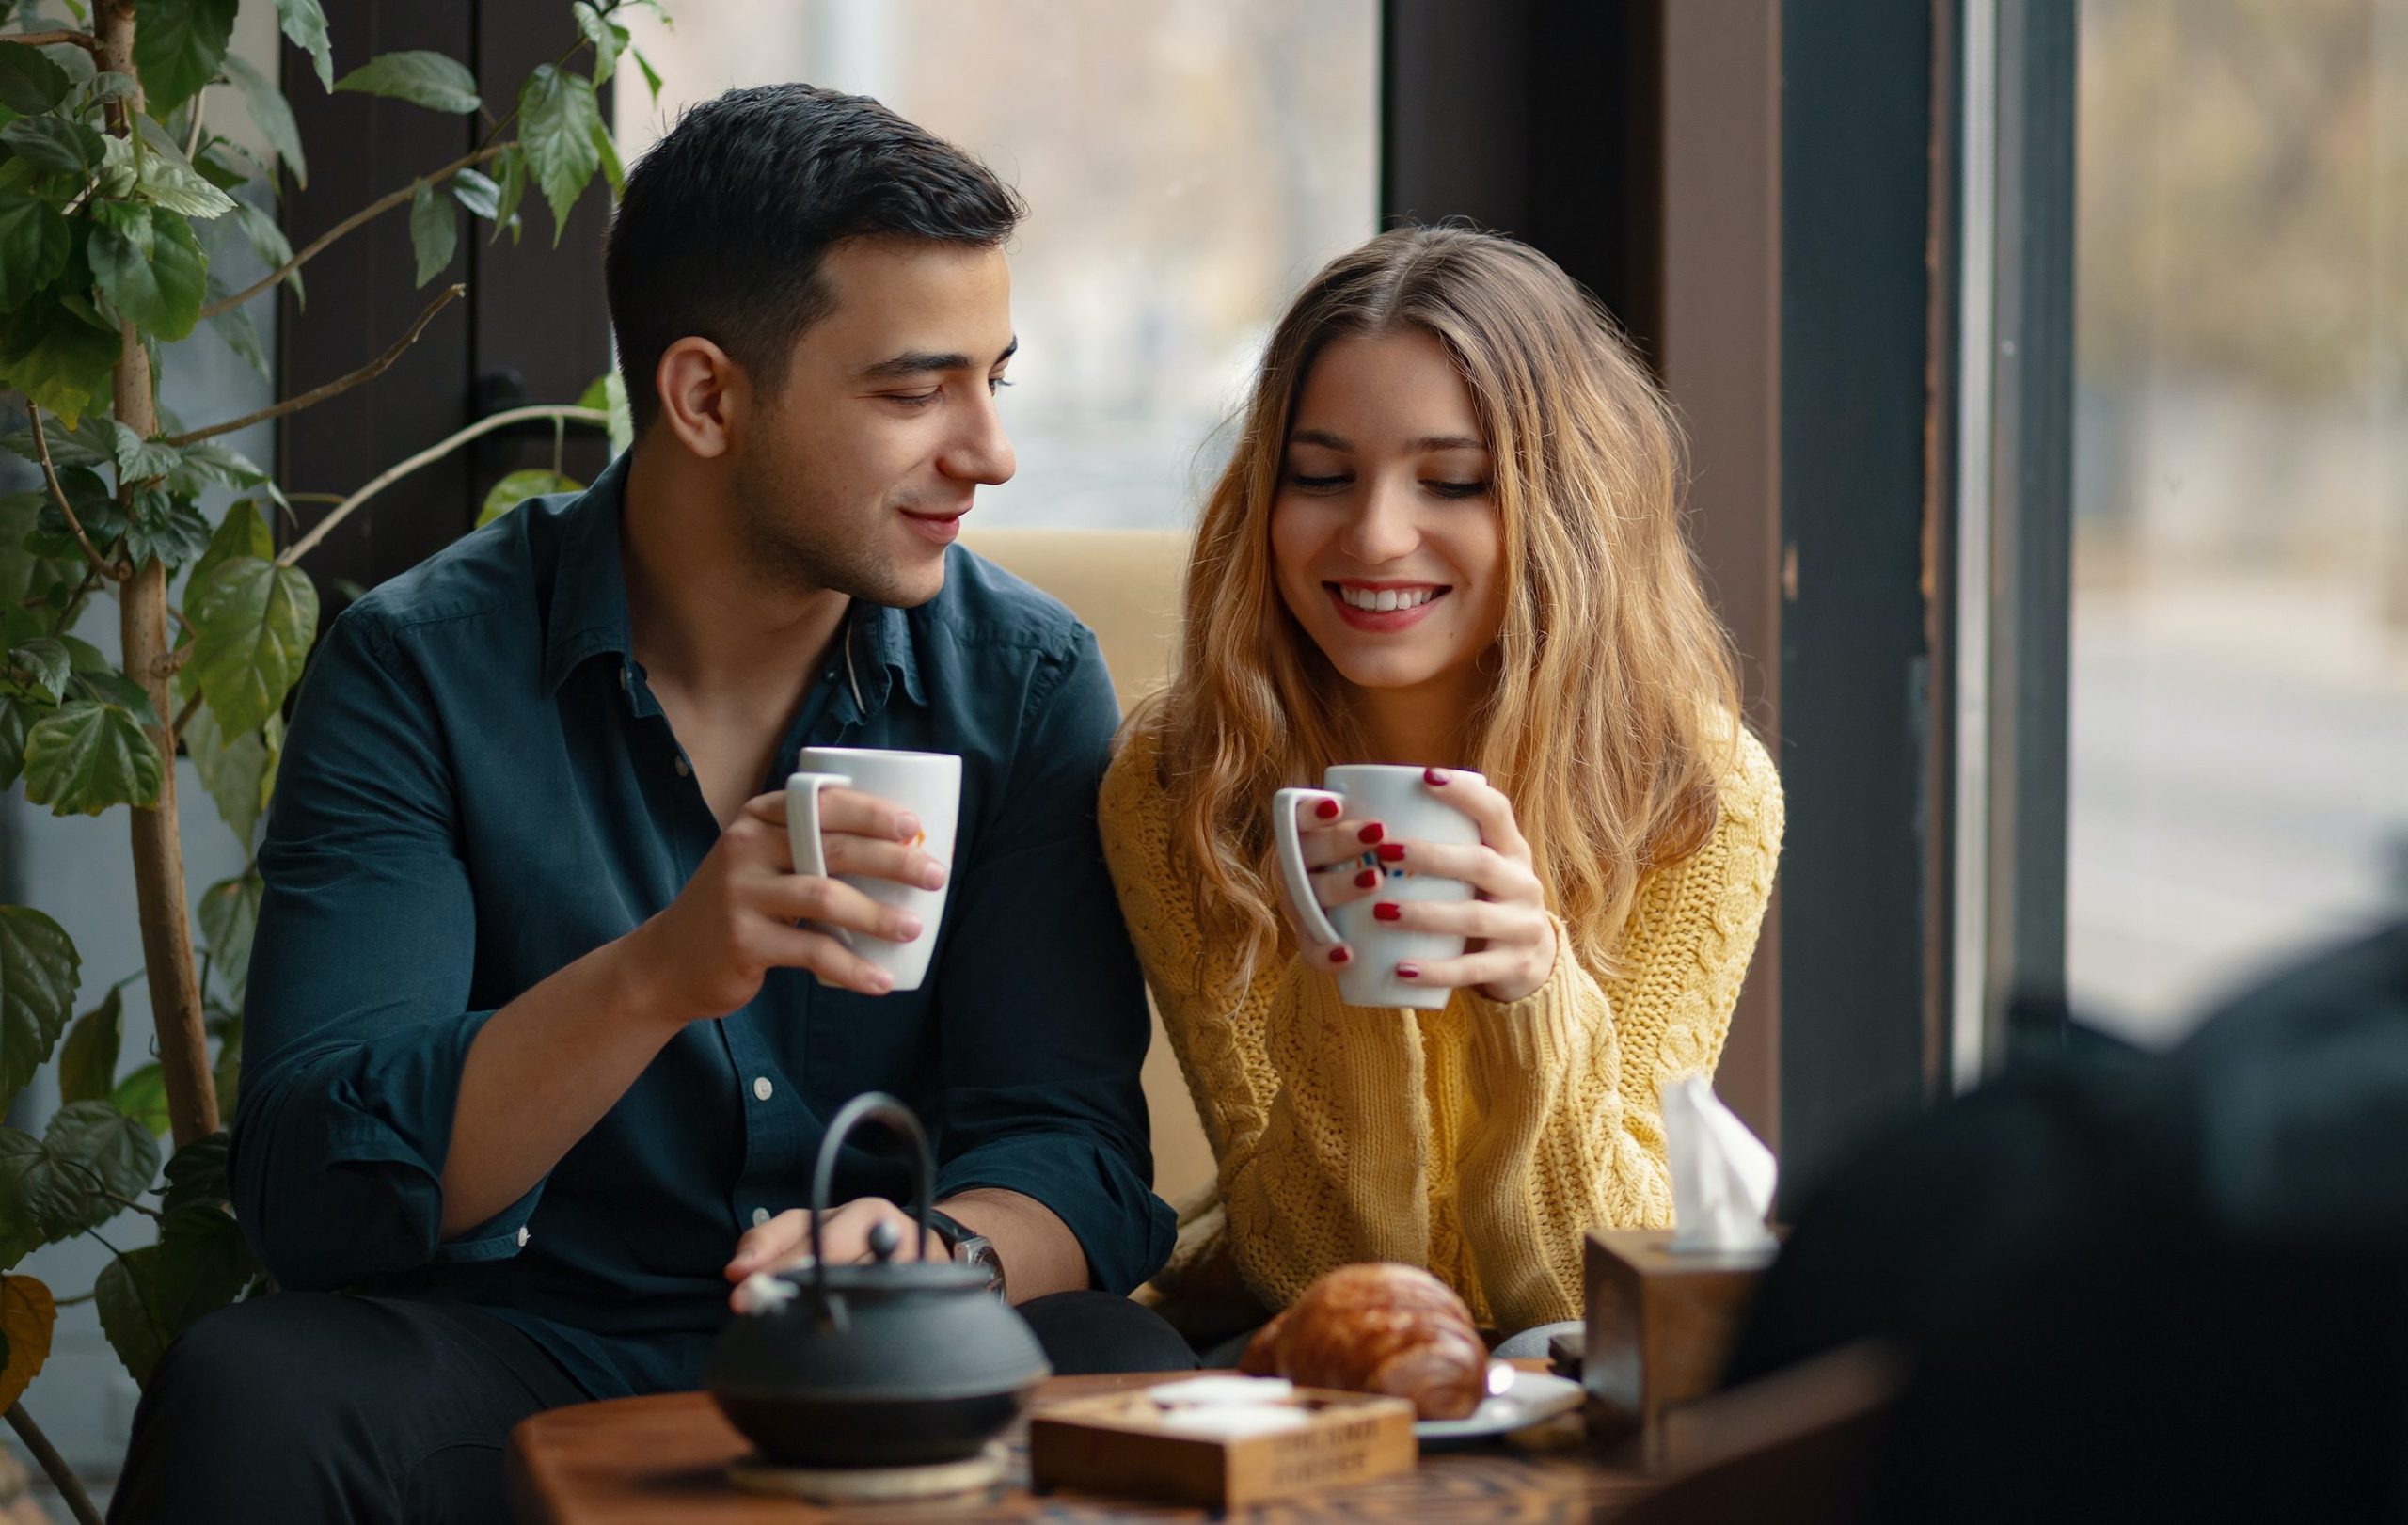 Schöne Momente - Junger Mann und Dame trinken einen Kaffee bei einem Date